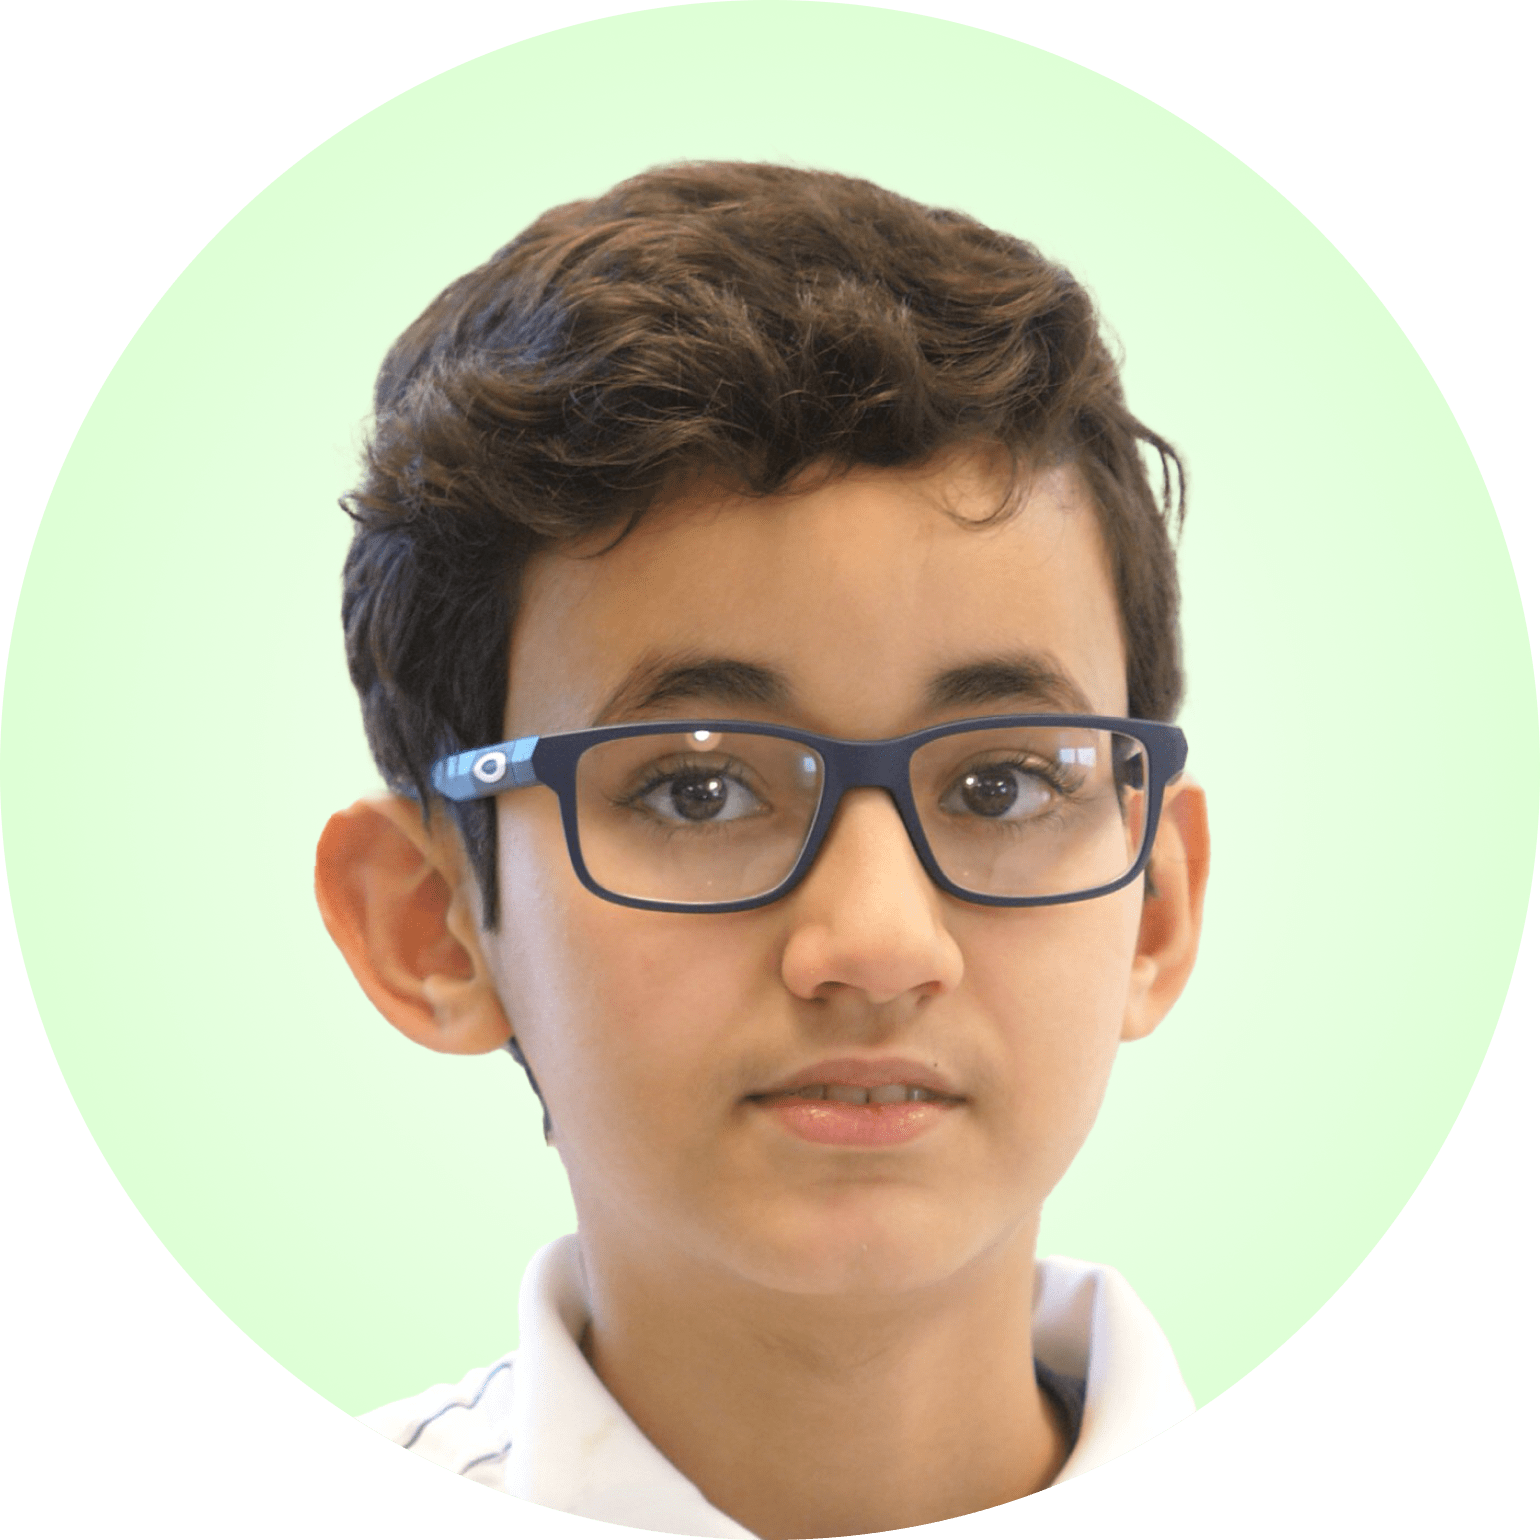 Boy - Age 11 - Imran Fahmi